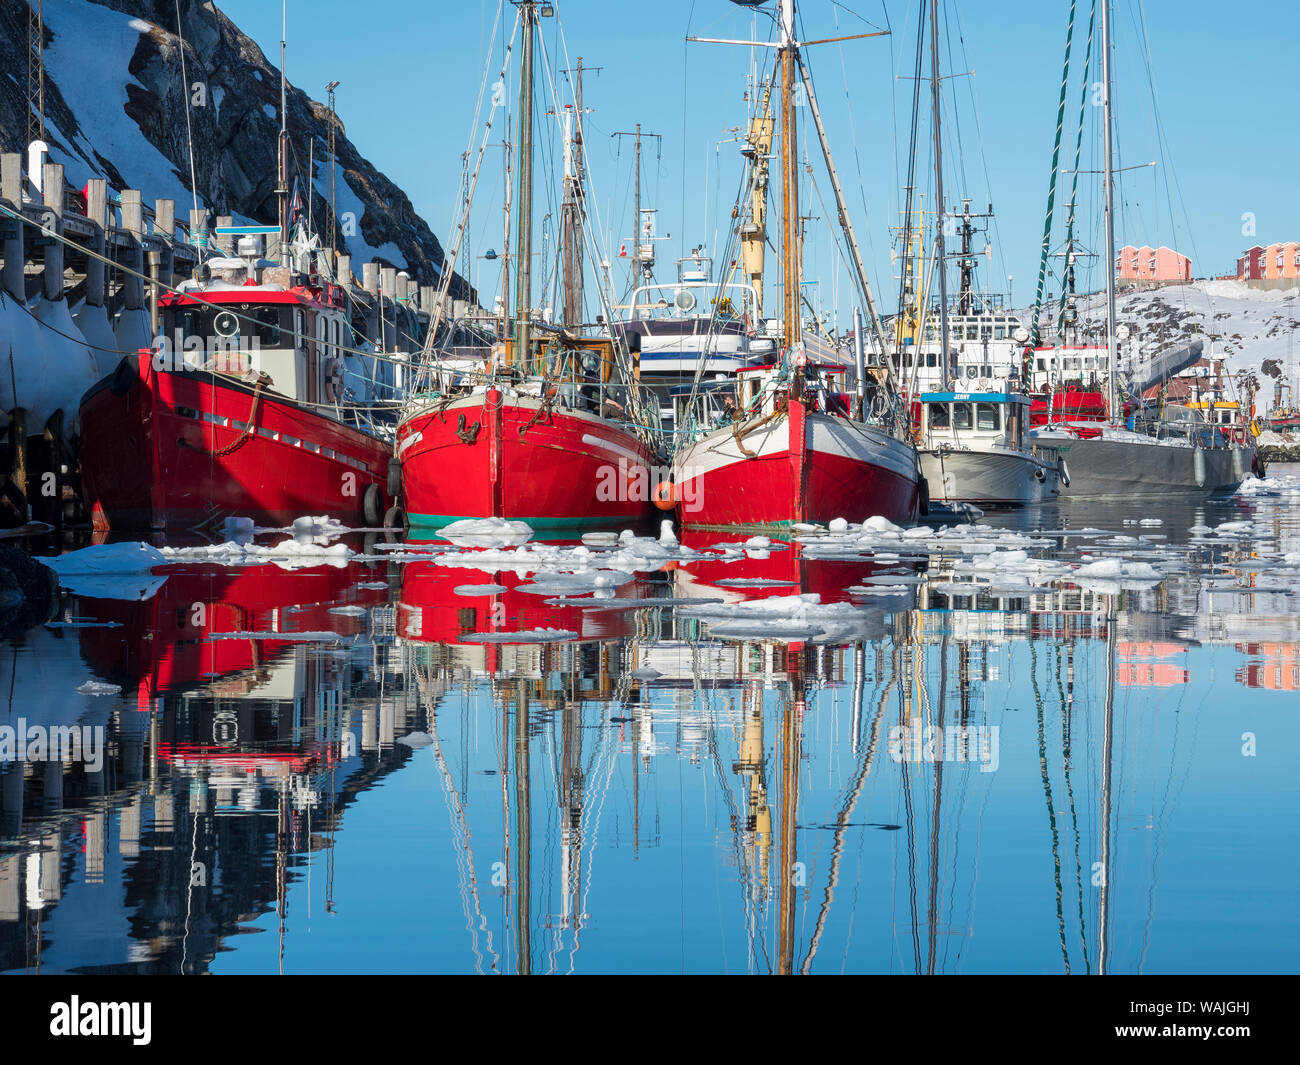 Le port de Nuuk. Nuuk, capitale du Groenland. (Usage éditorial uniquement) Banque D'Images